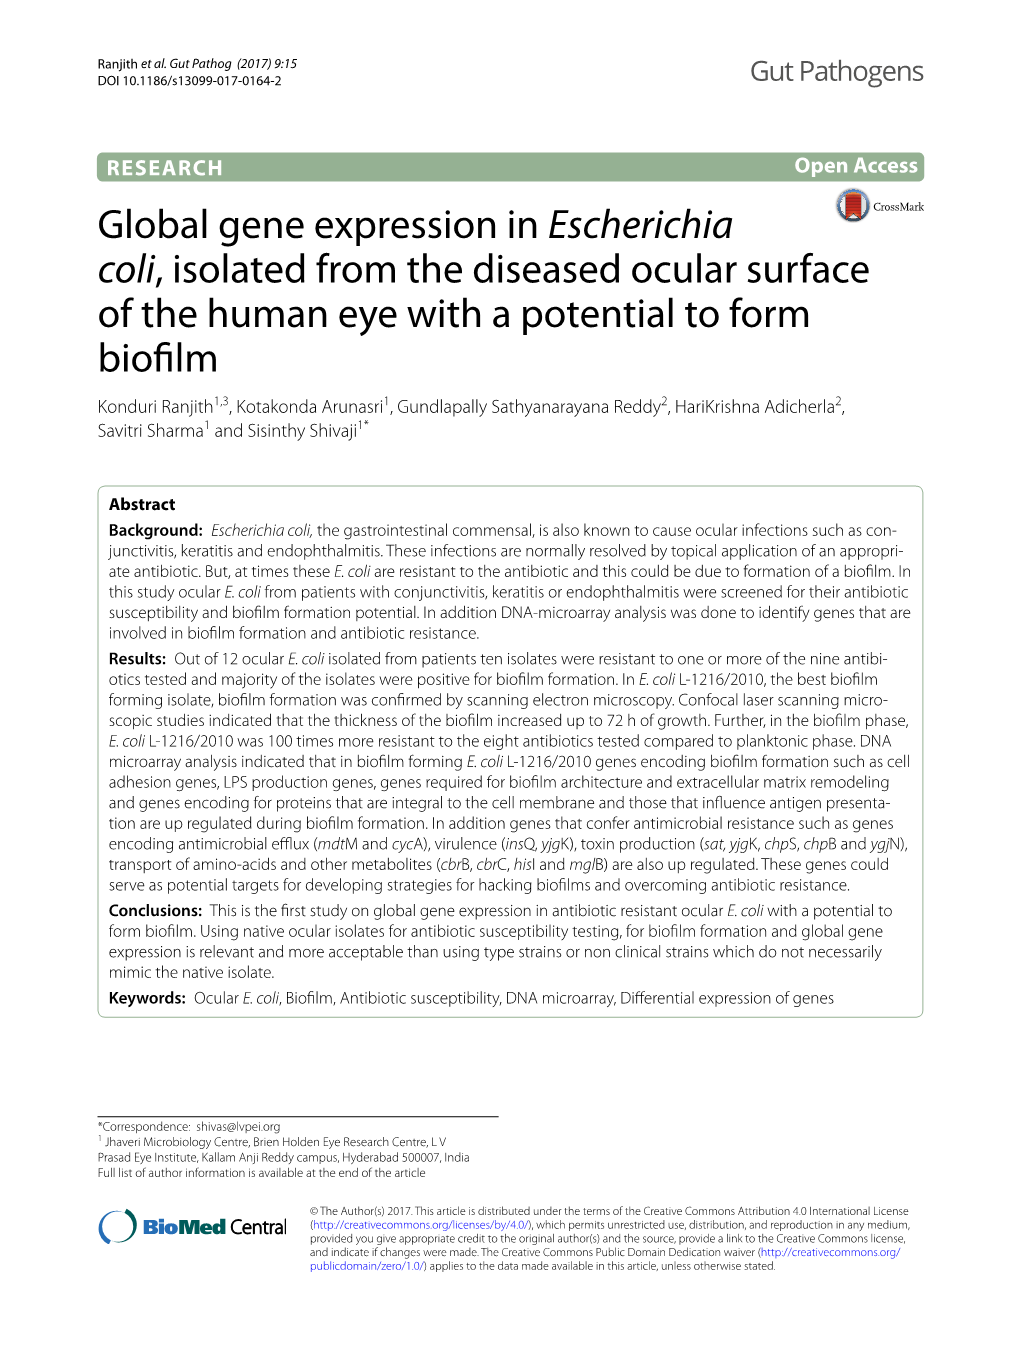 Global Gene Expression in Escherichia Coli